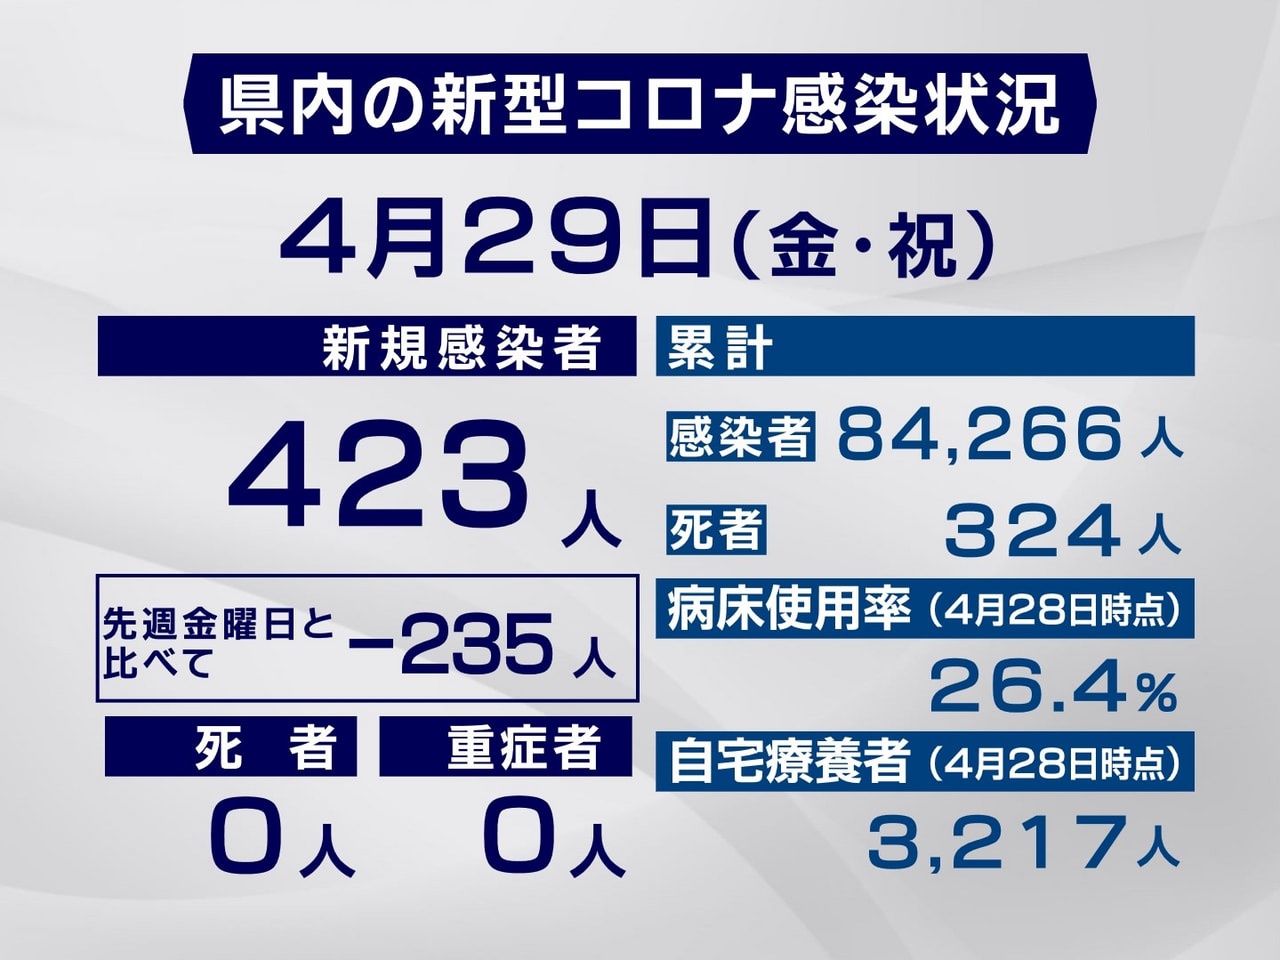 岐阜県は２９日、新型コロナウイルスの新規感染者が４２３人確認されたと発表しました...